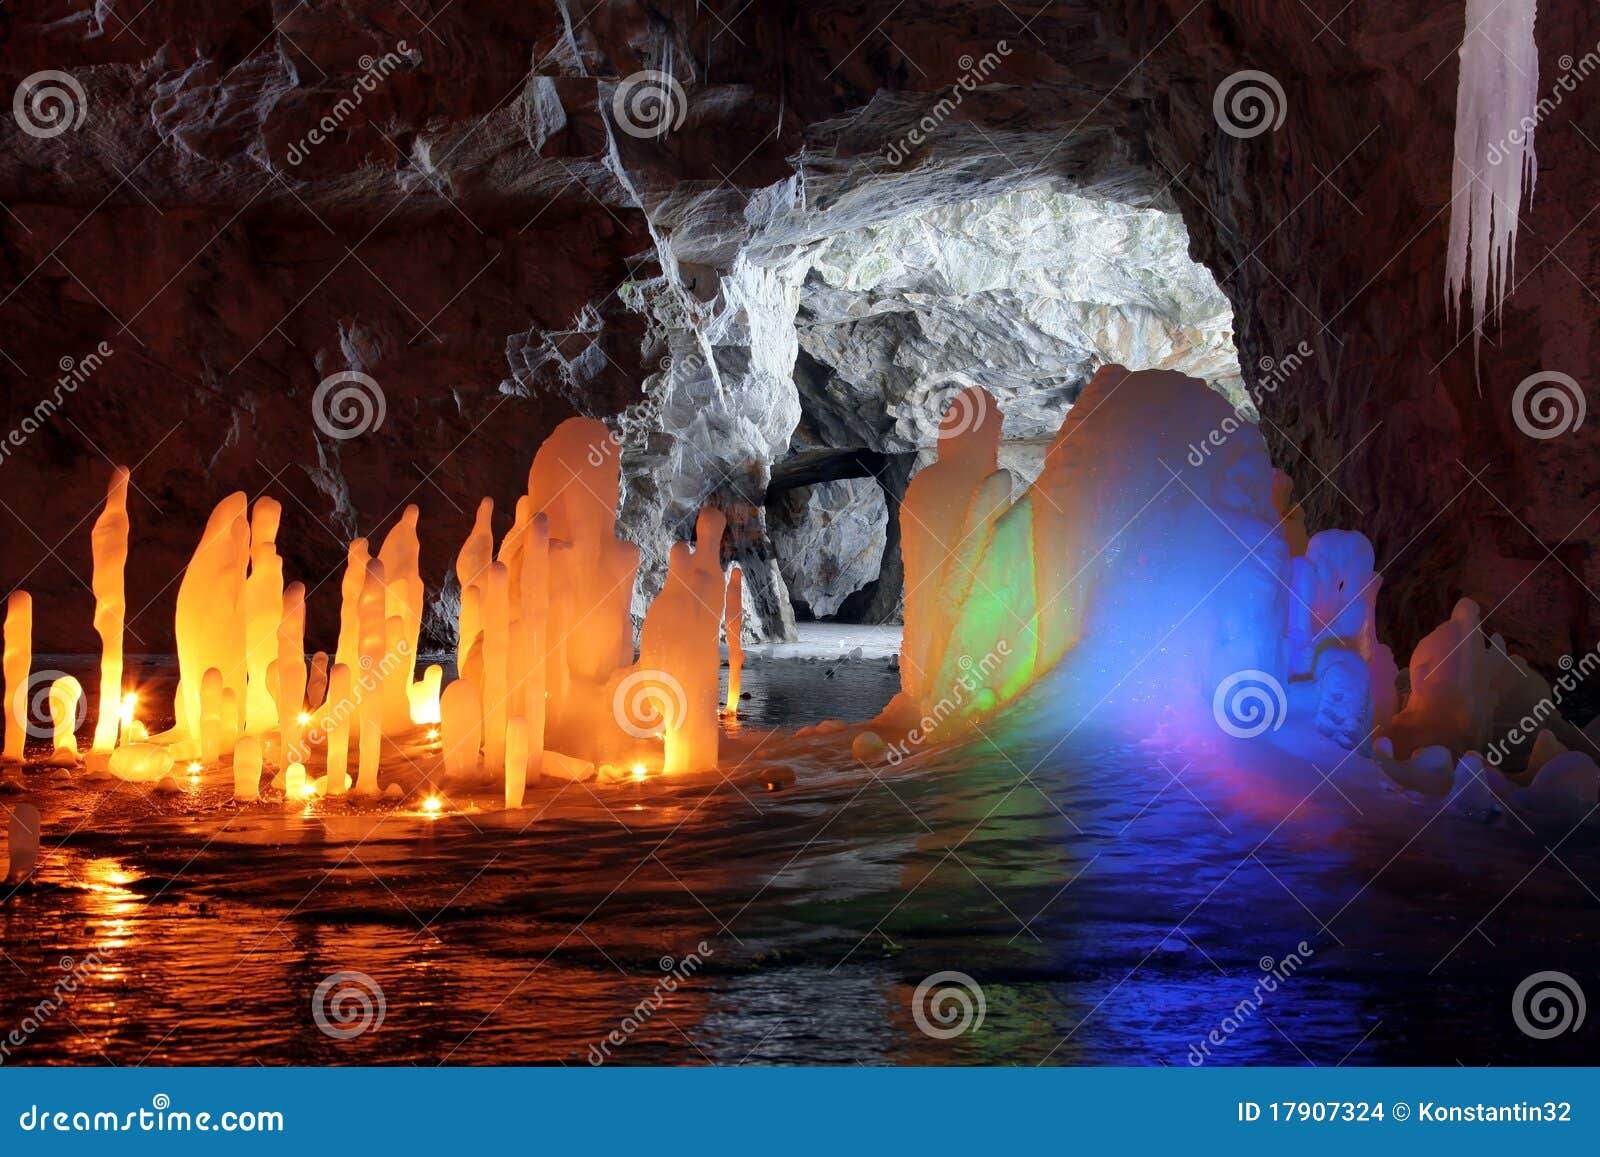 amazing stalagmite illuminations in cave